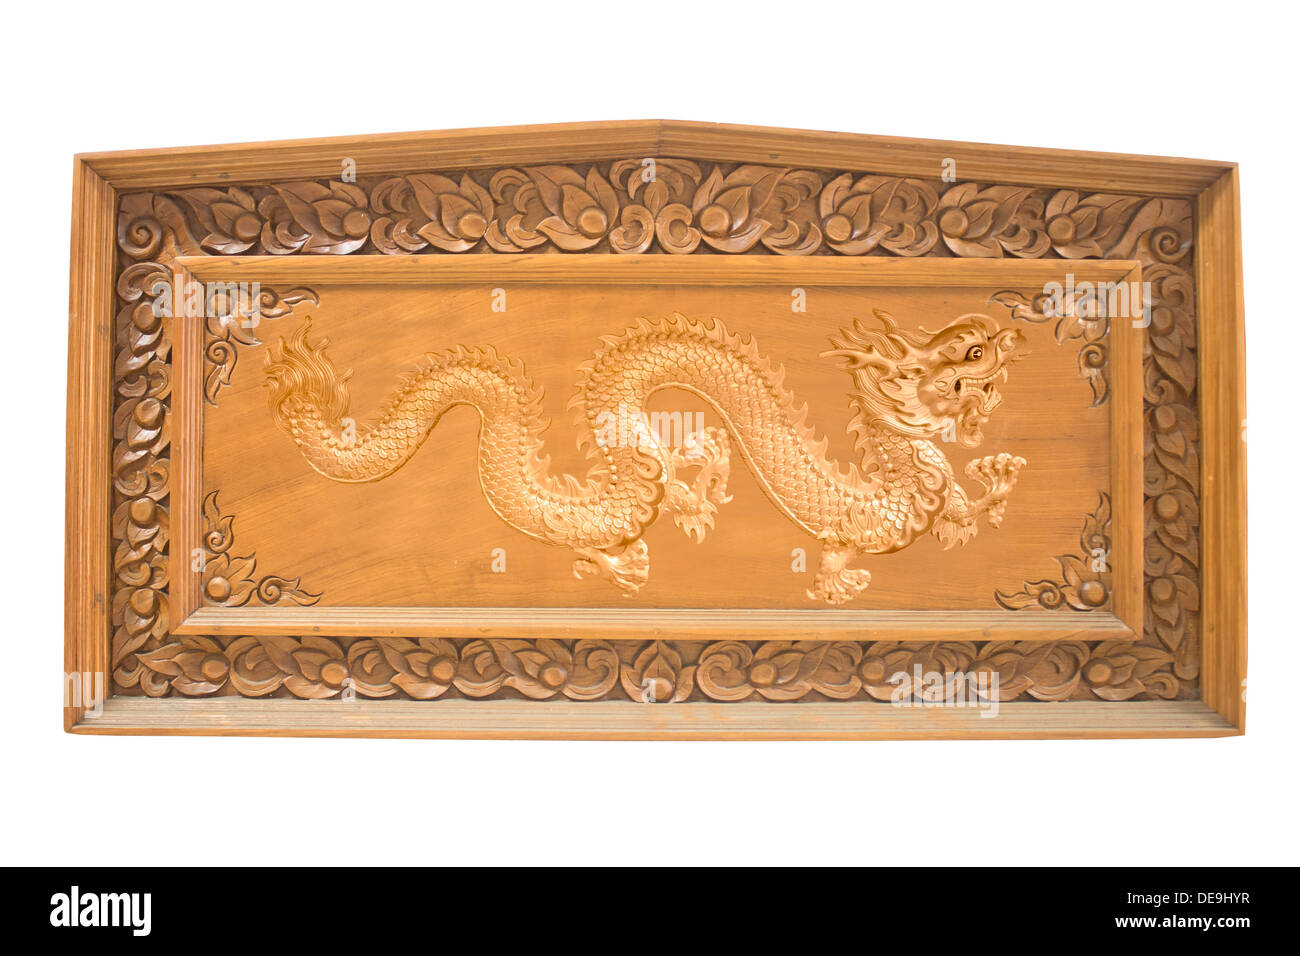 Drachen-Tier Architektur Kunst Asien asiatische Herkunft Board Grenze braun Buddhismus Holz chinesische Kultur Dekor verzieren Dekorati Stockfoto